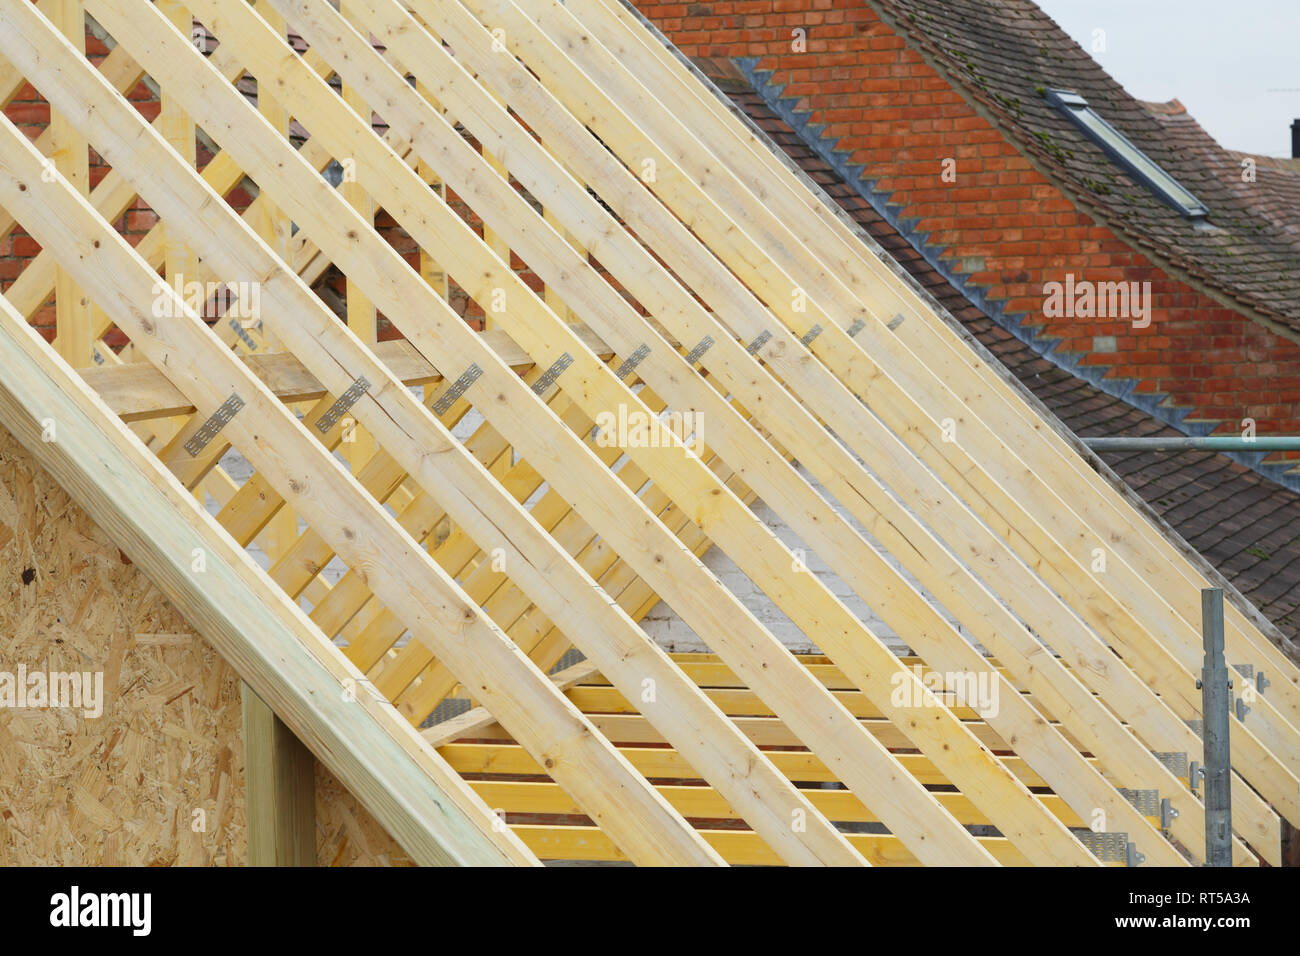 Détail de nouvelles fermes de toit en bois sur un nouveau toit en cours d'installation pour une maison d'époque Restauration en Angleterre Banque D'Images